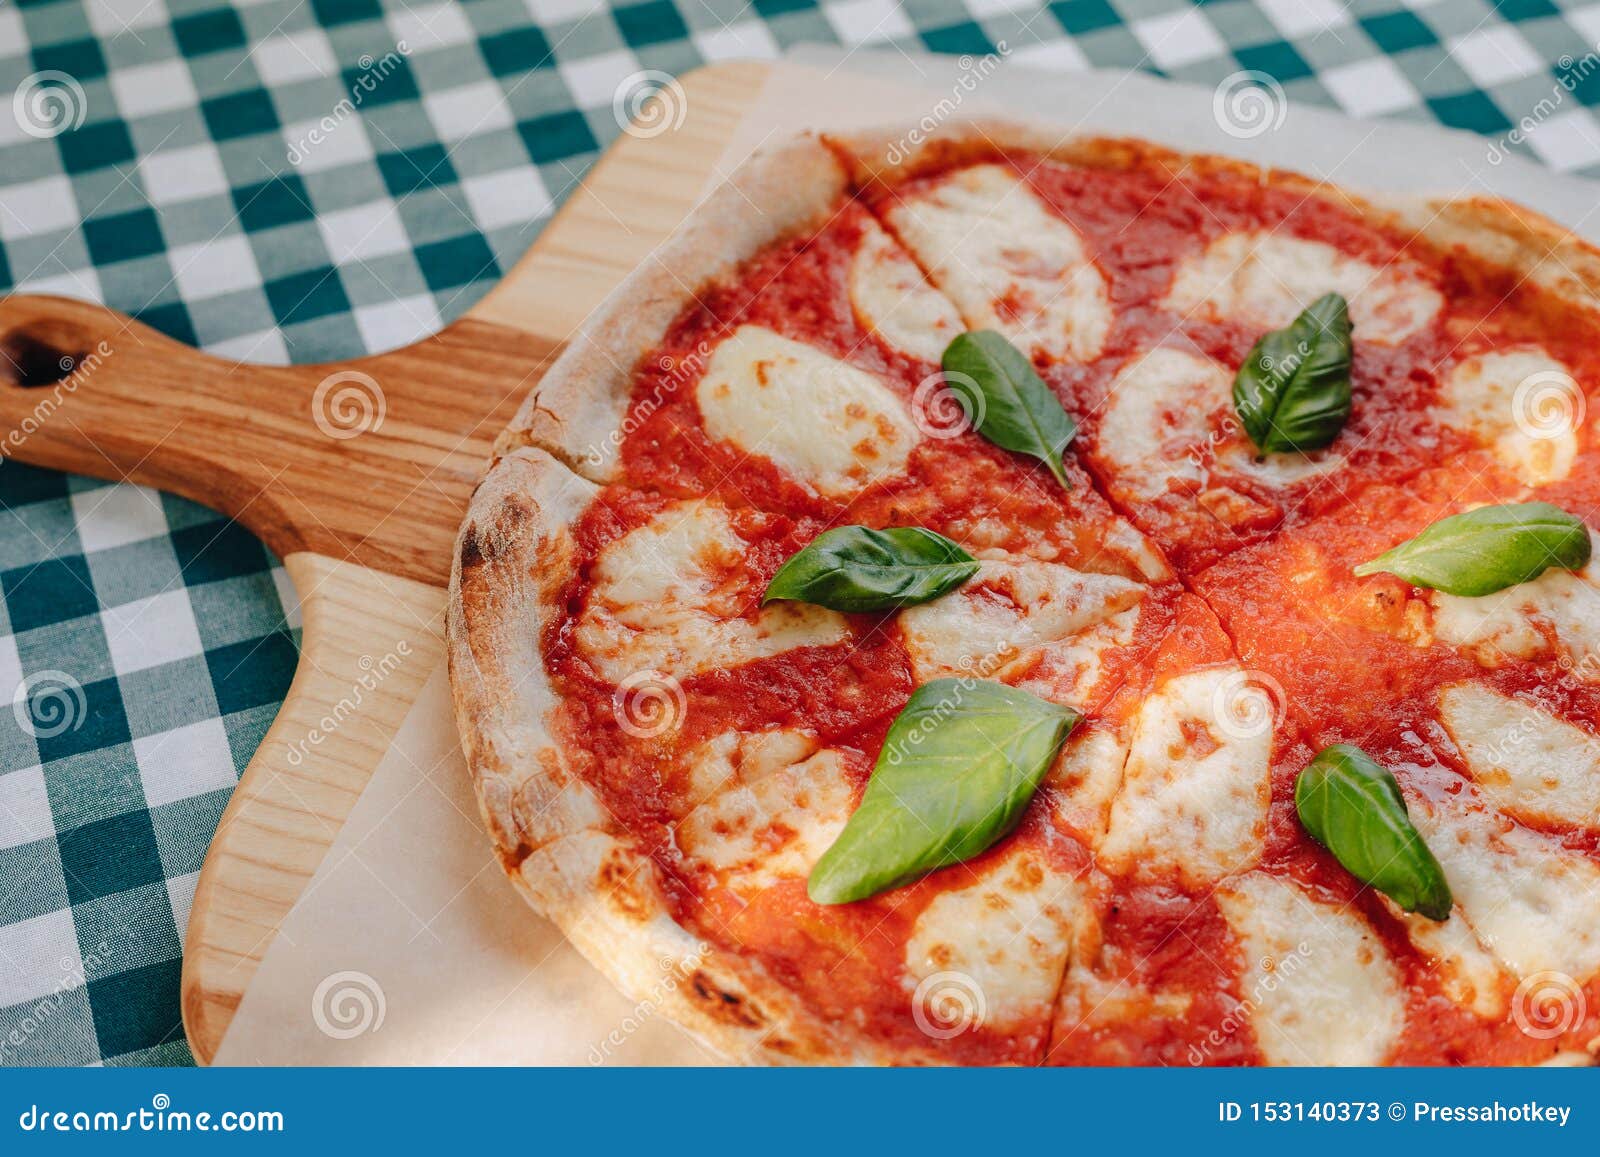 пицца неаполитанская с ветчиной фото 59